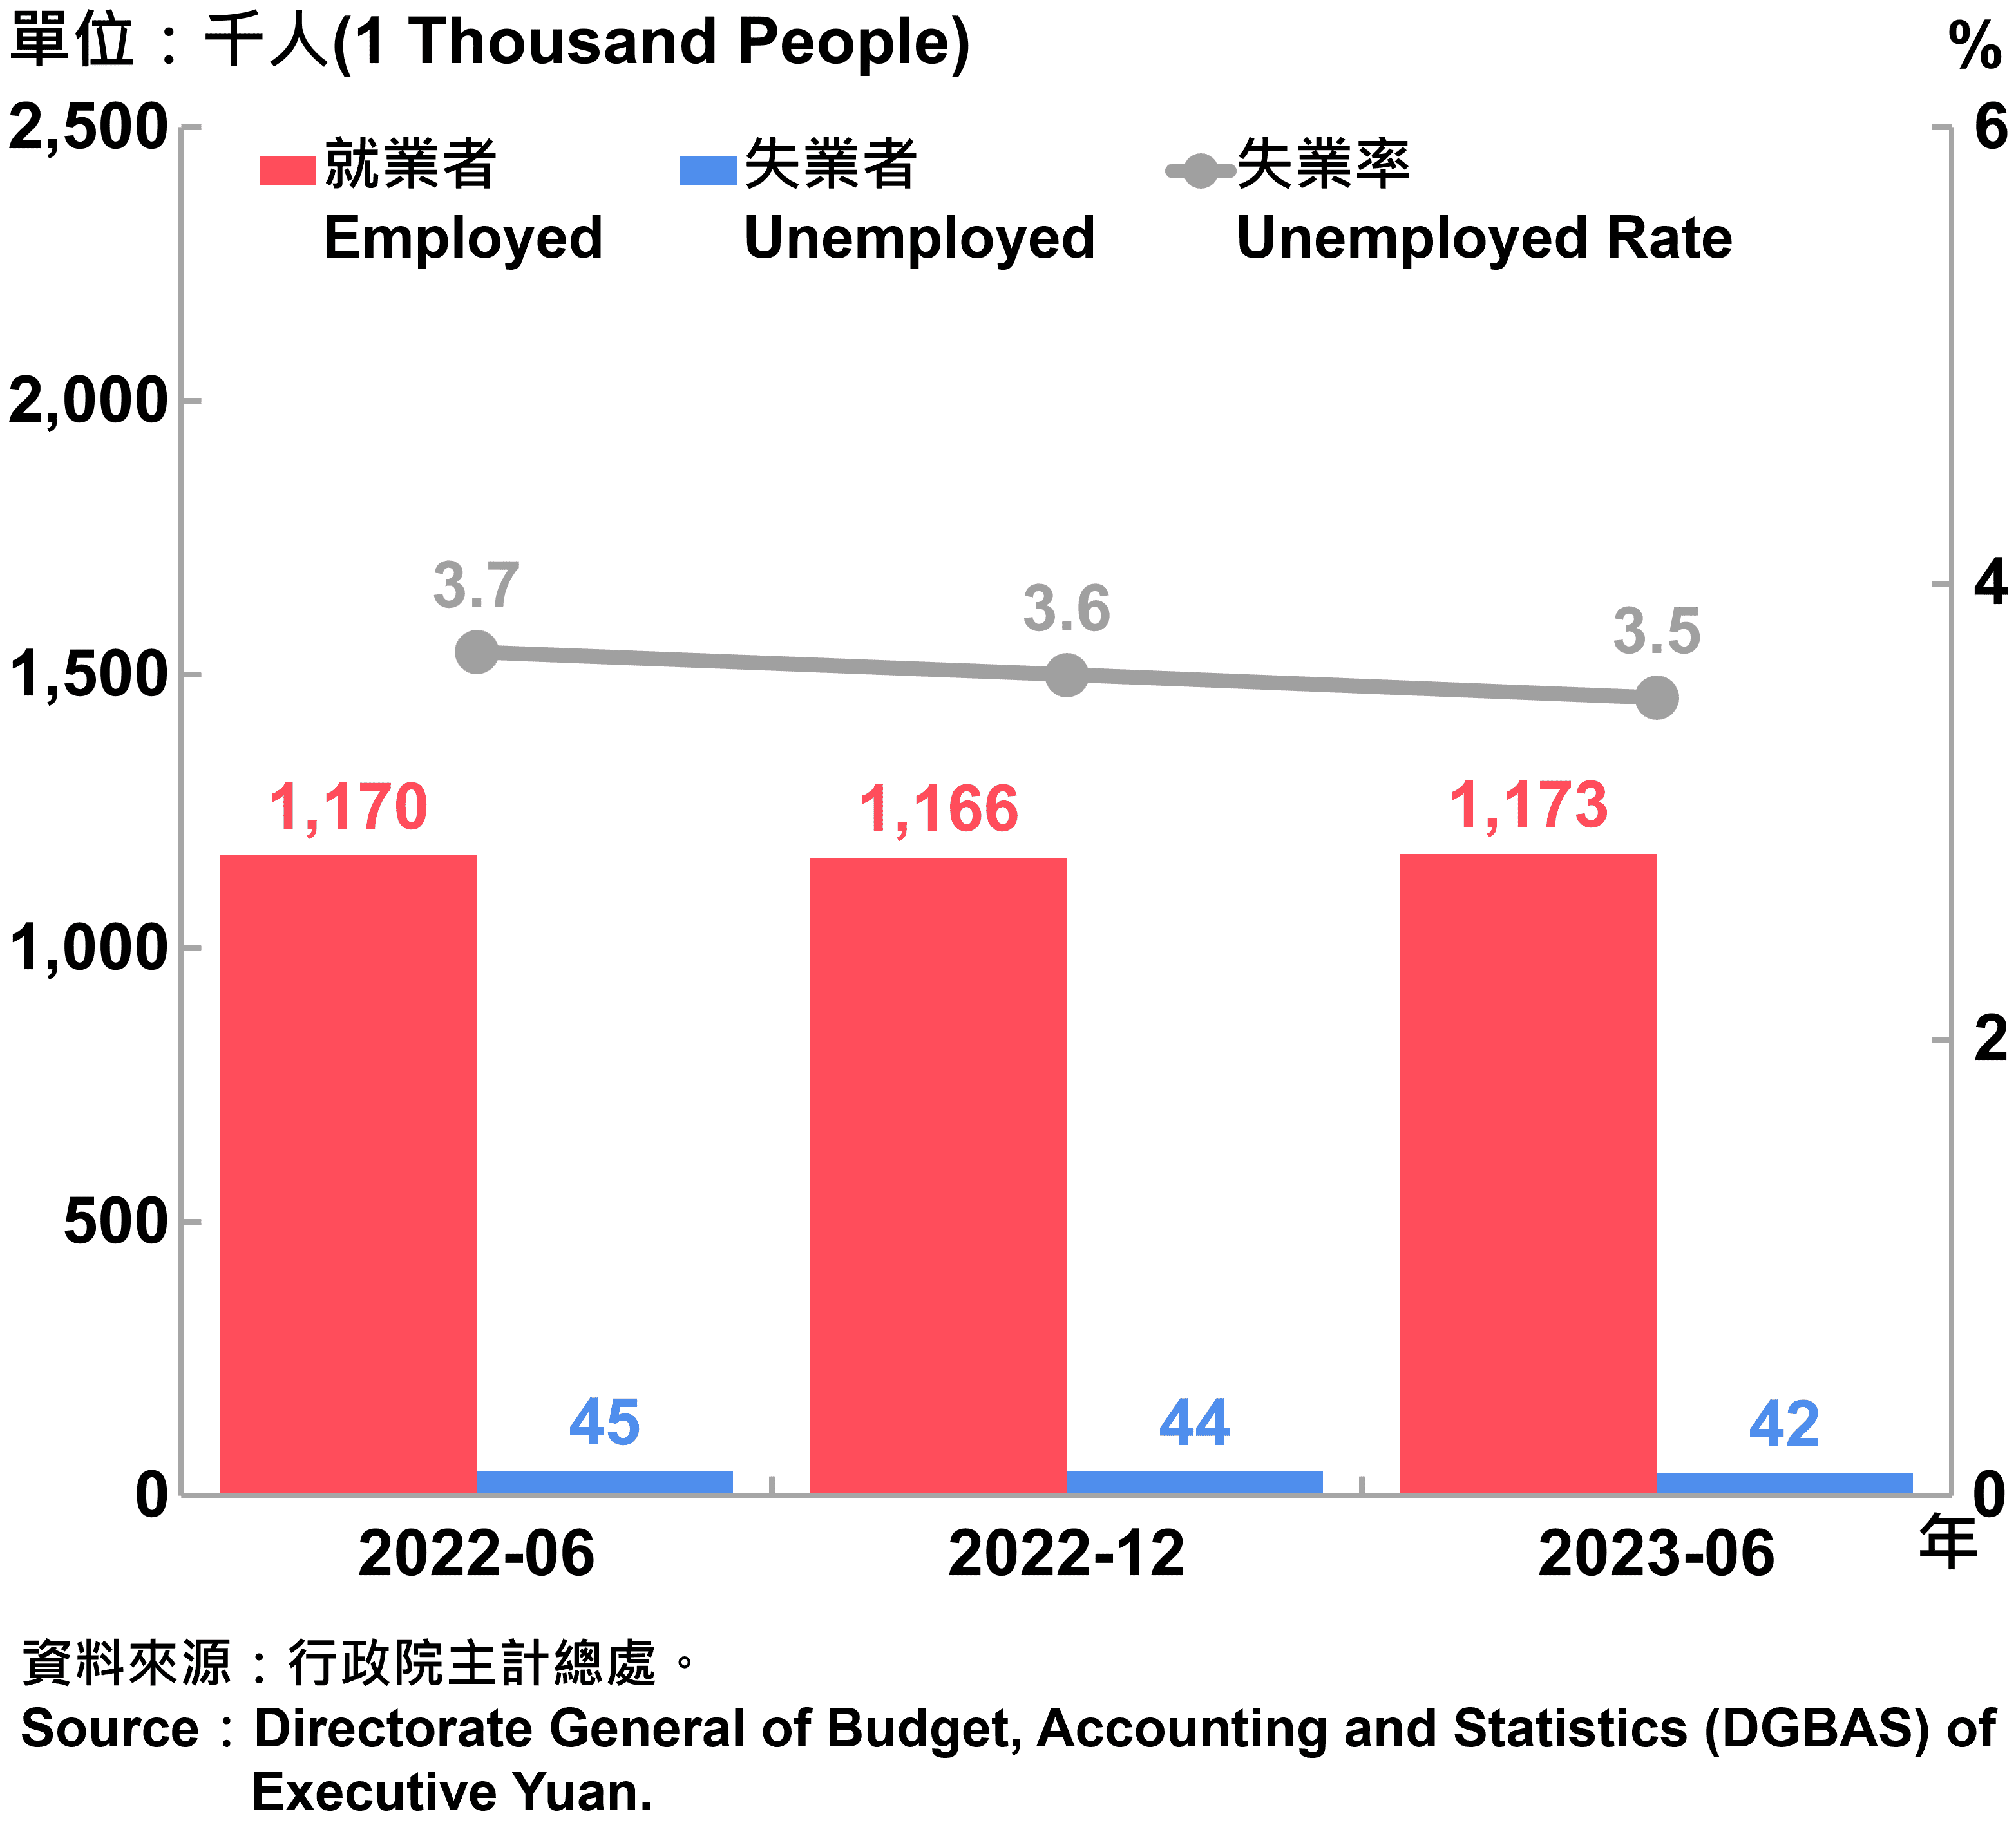 臺北市勞動力人數統計—2023Q2 Labor Force Statistics in Taipei City—2023Q2